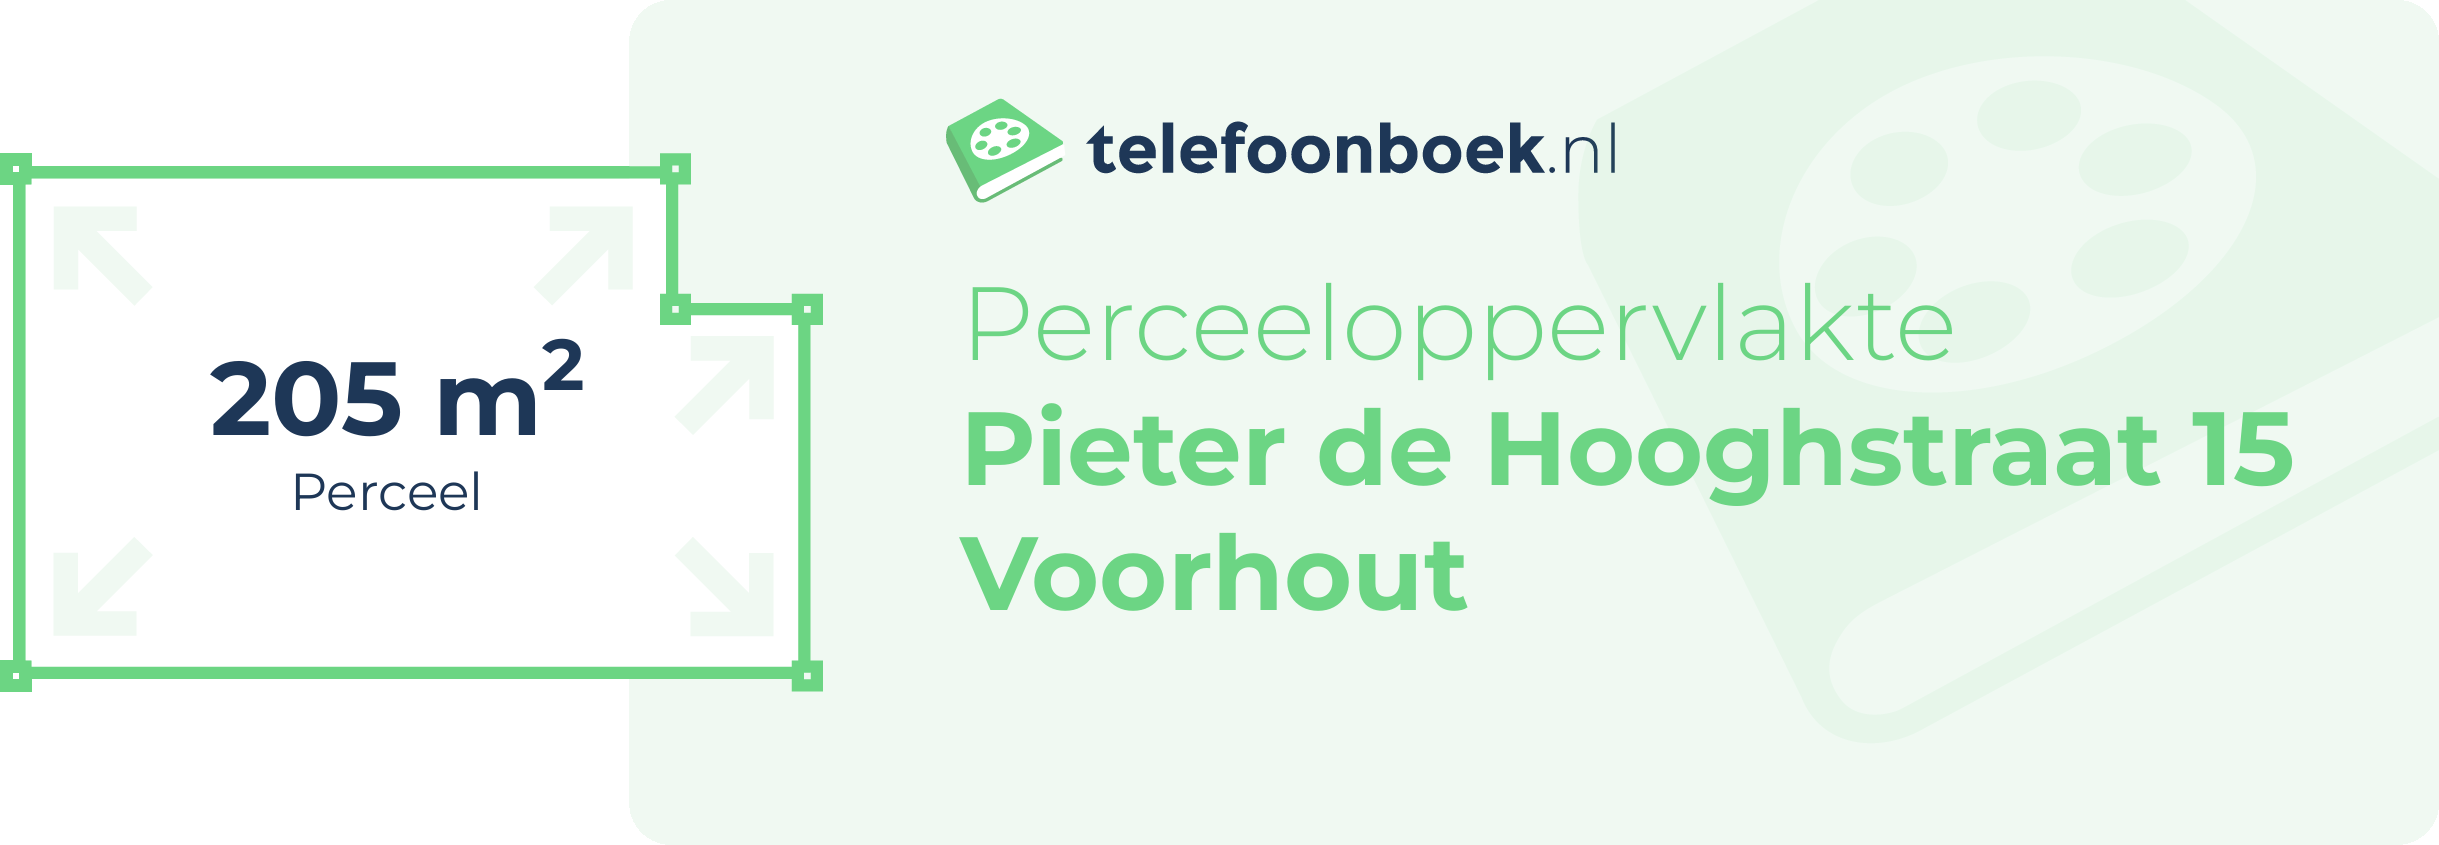 Perceeloppervlakte Pieter De Hooghstraat 15 Voorhout